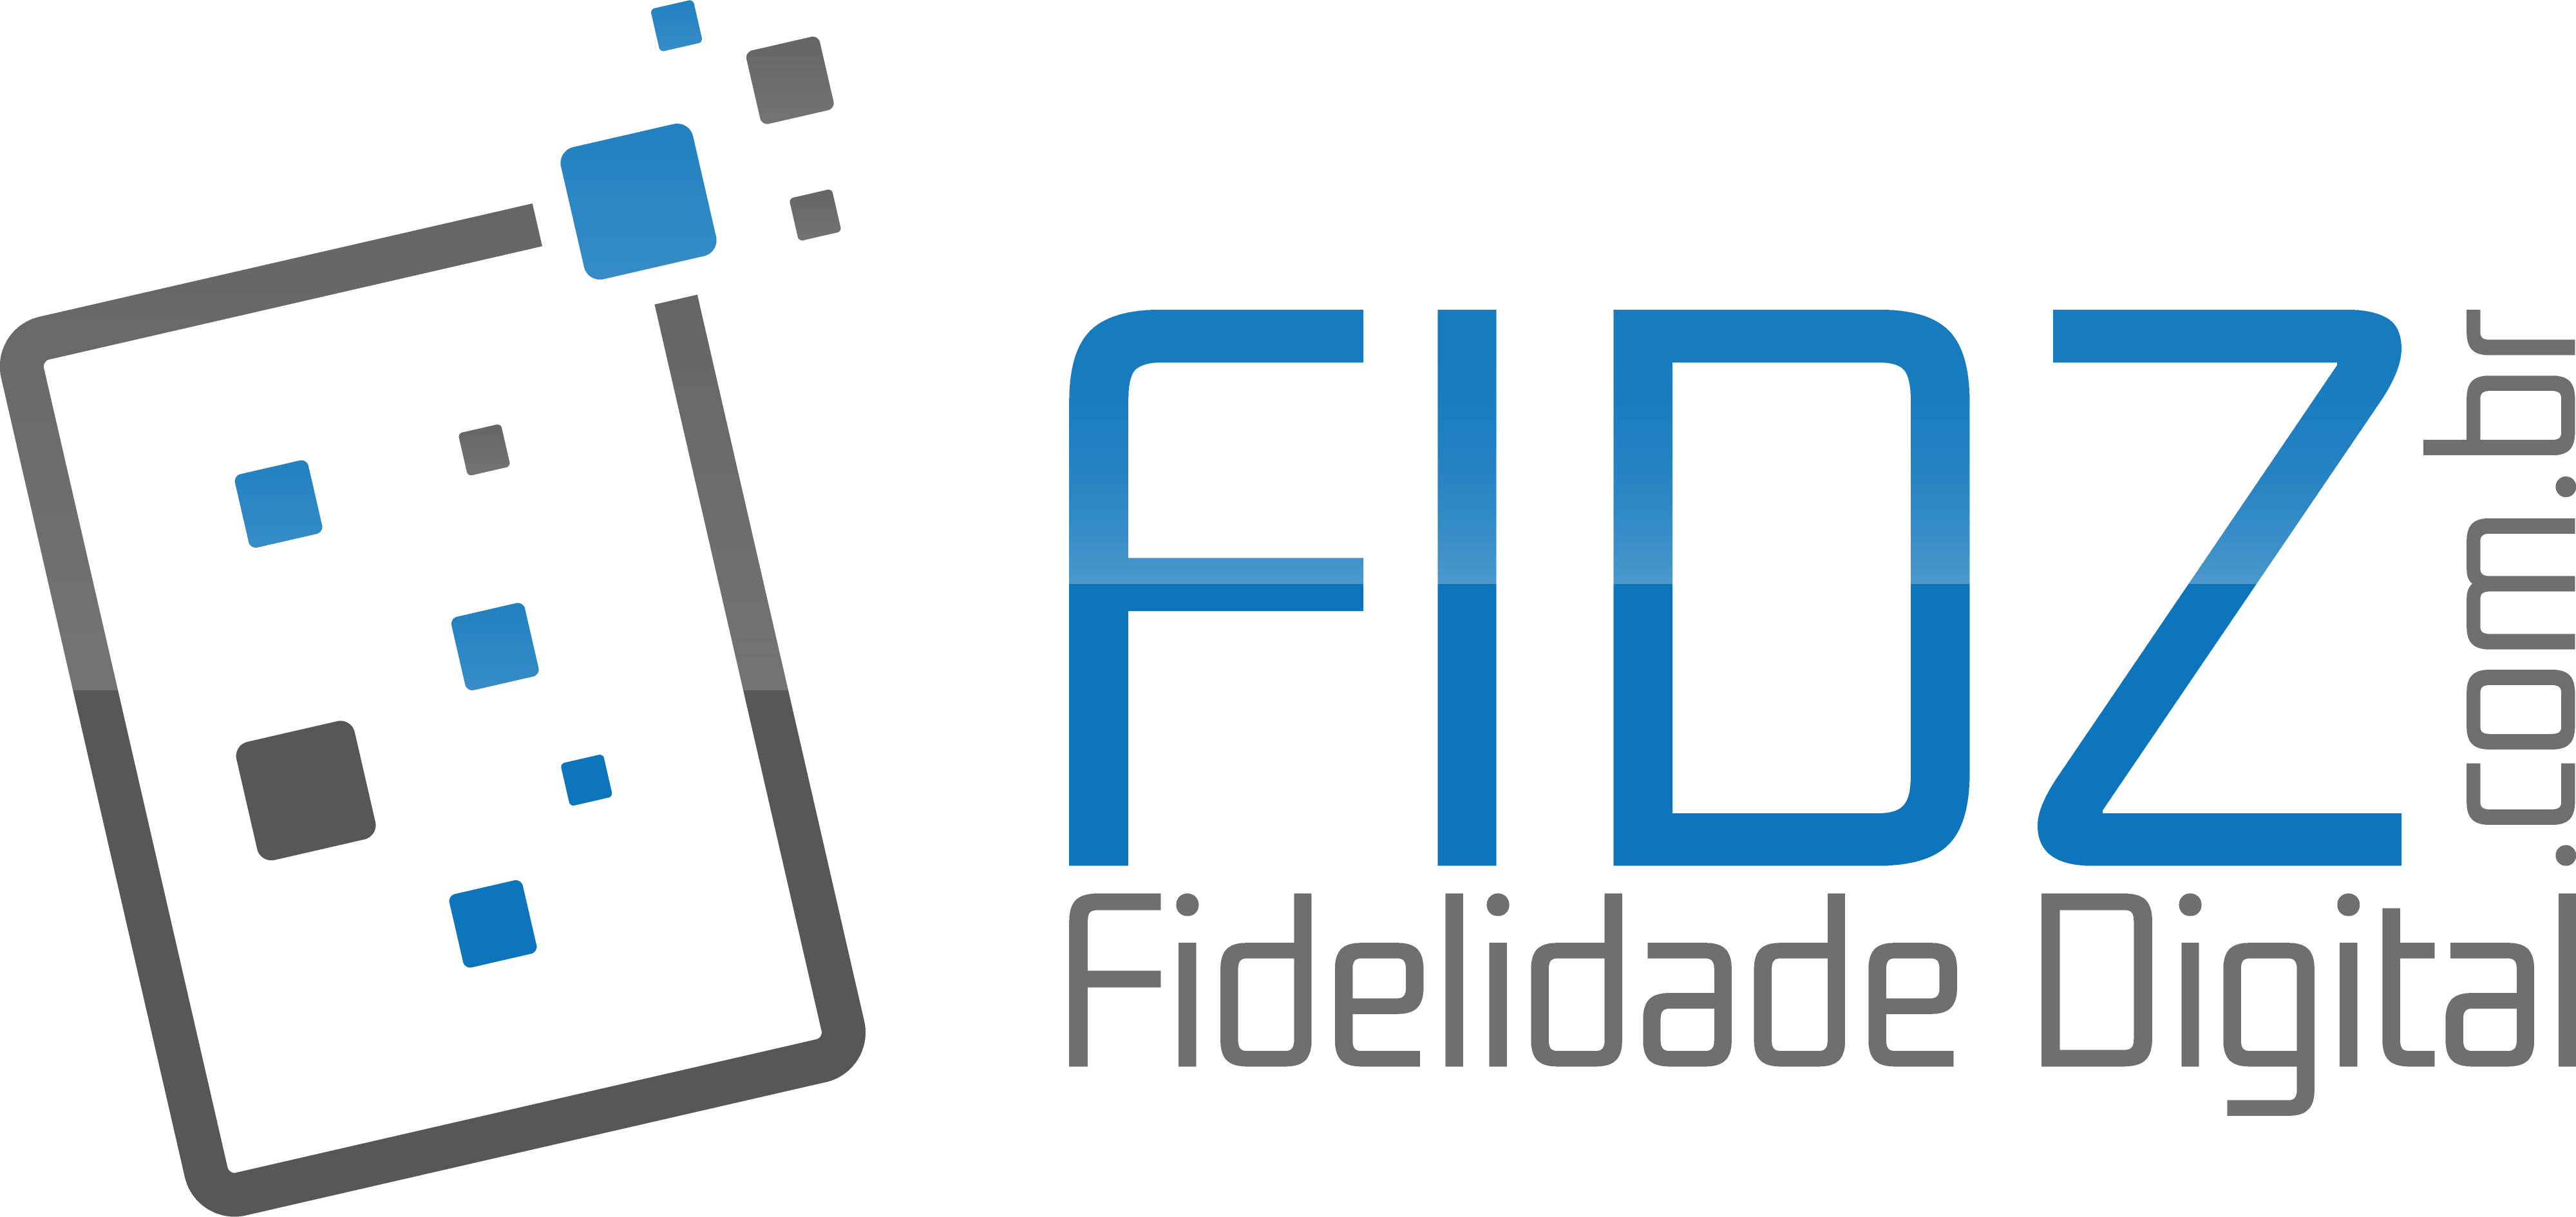 Fidz logo